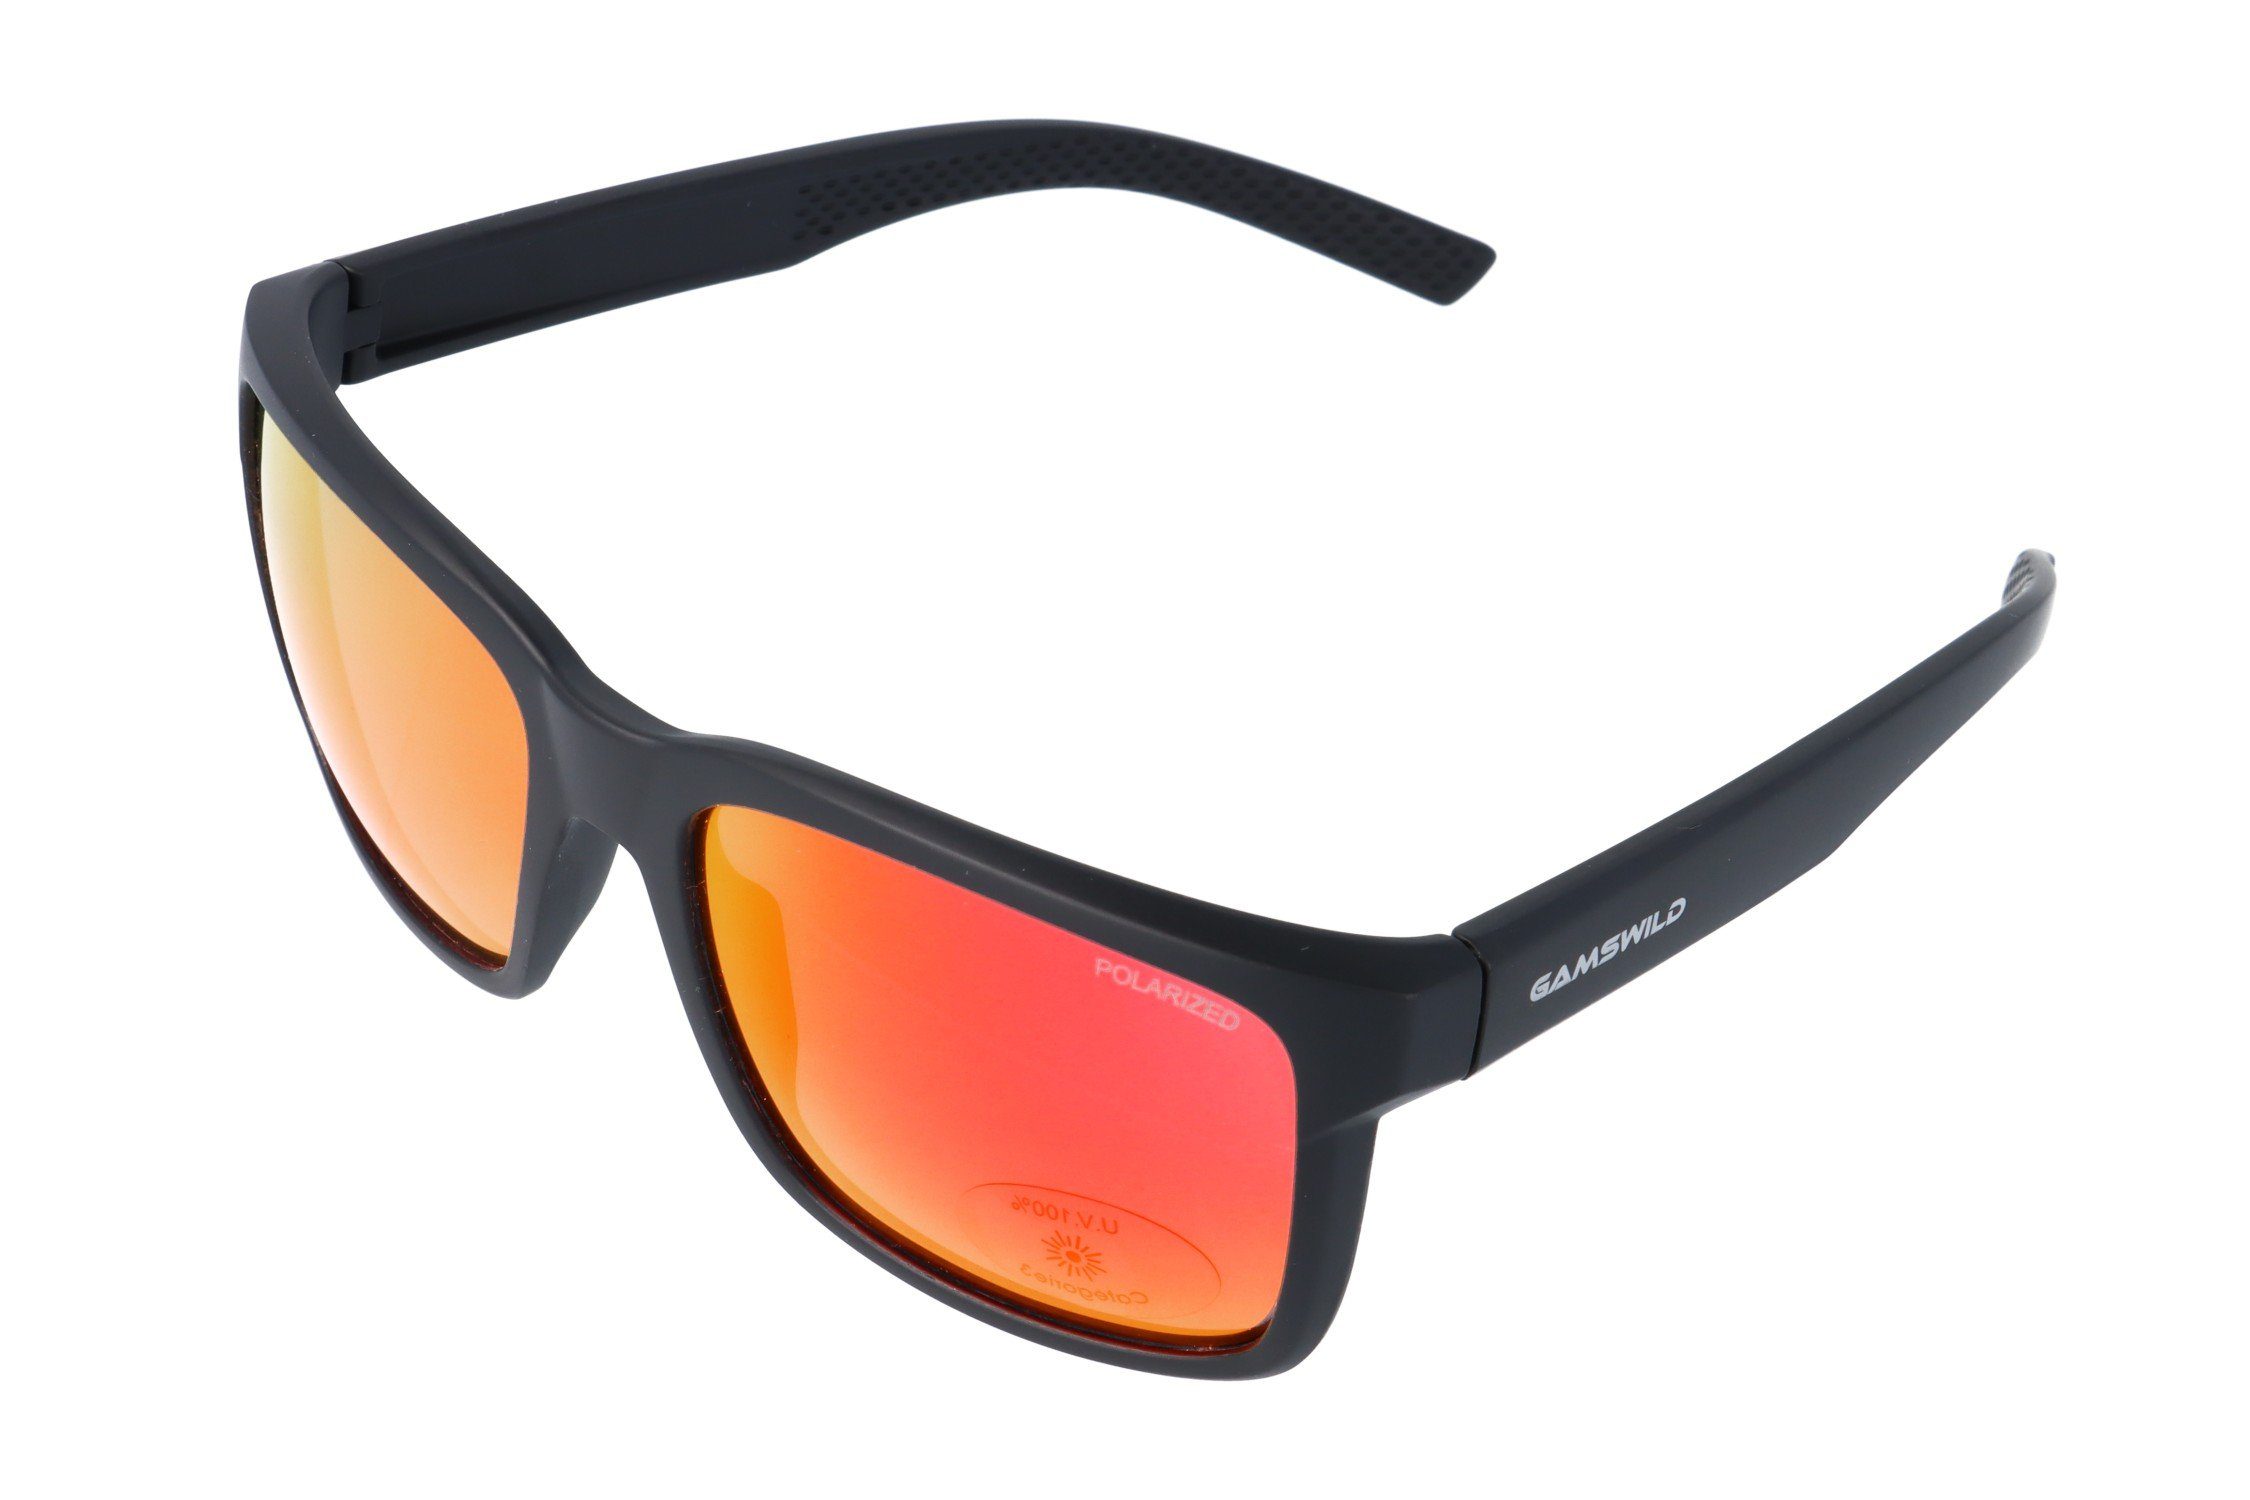 Gamswild Sonnenbrille UV400 Sportbrille Skibrille Fahrradbrille polarisiert verspiegelte Gläser Damen Herren Unisex schmale Modell WM7432 in blau, grau, rot